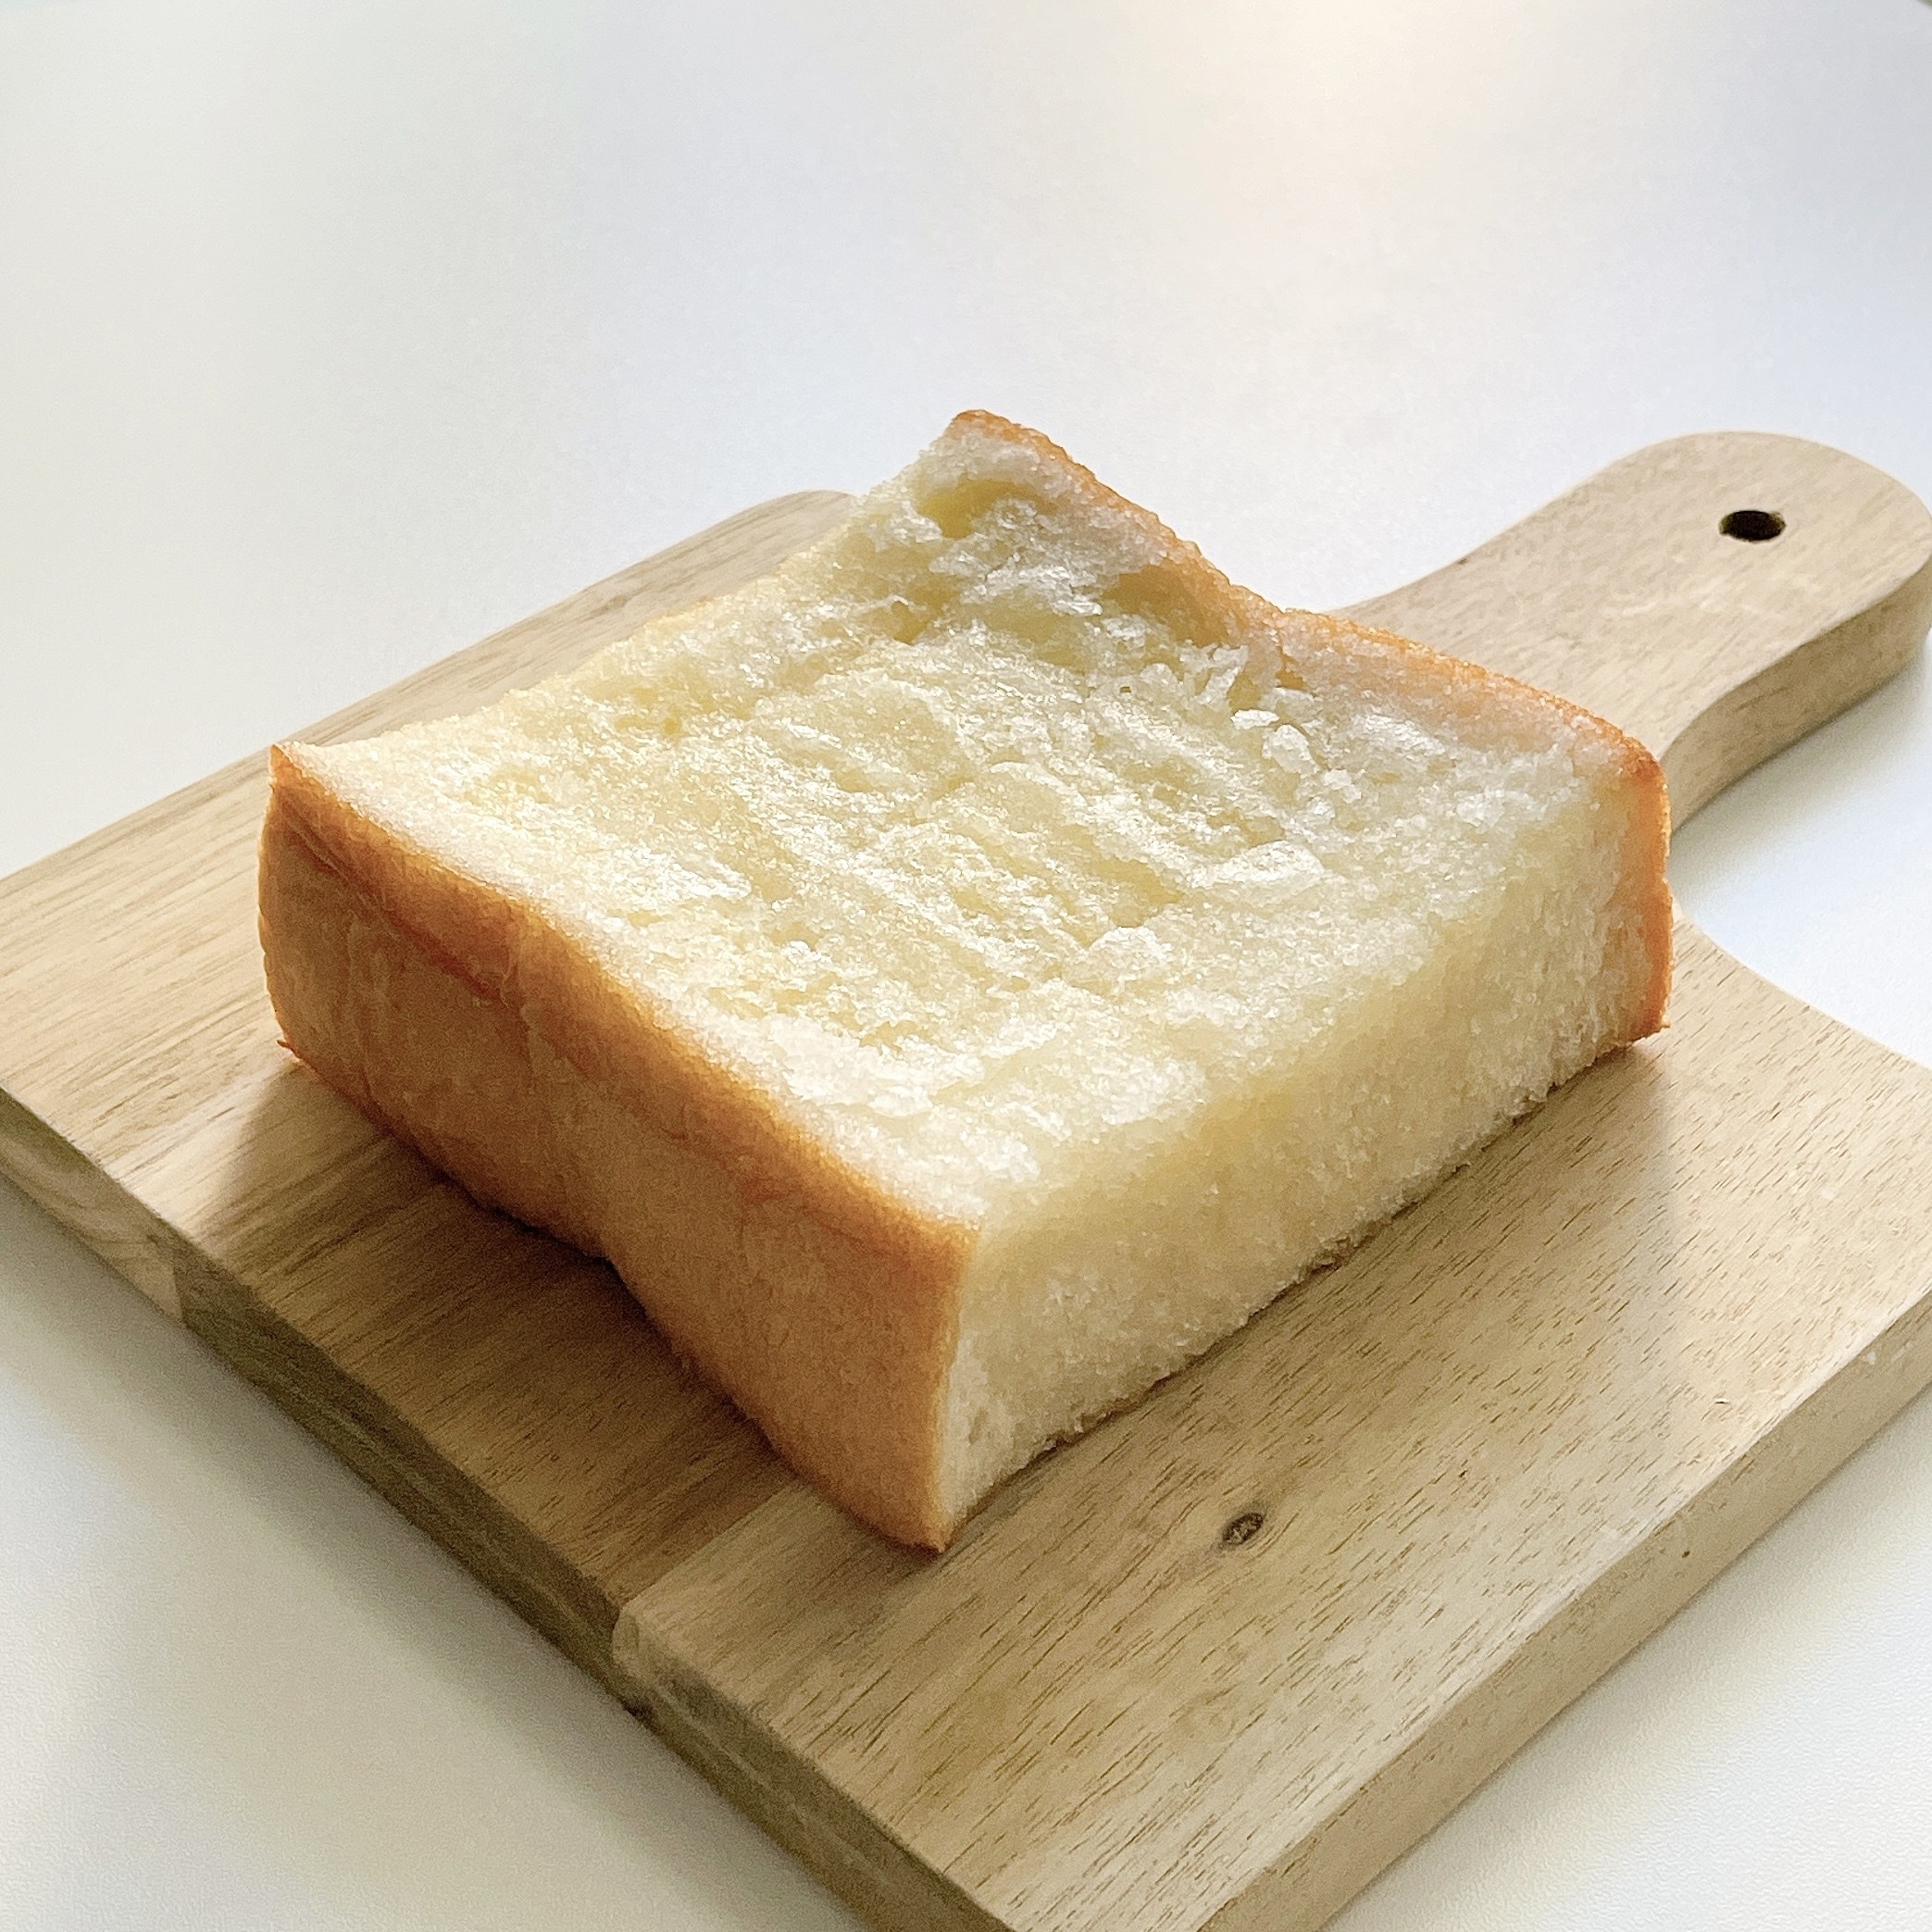 セブン-イレブンのおすすめのパン「7P 厚じゃりシュガートースト 1個入」